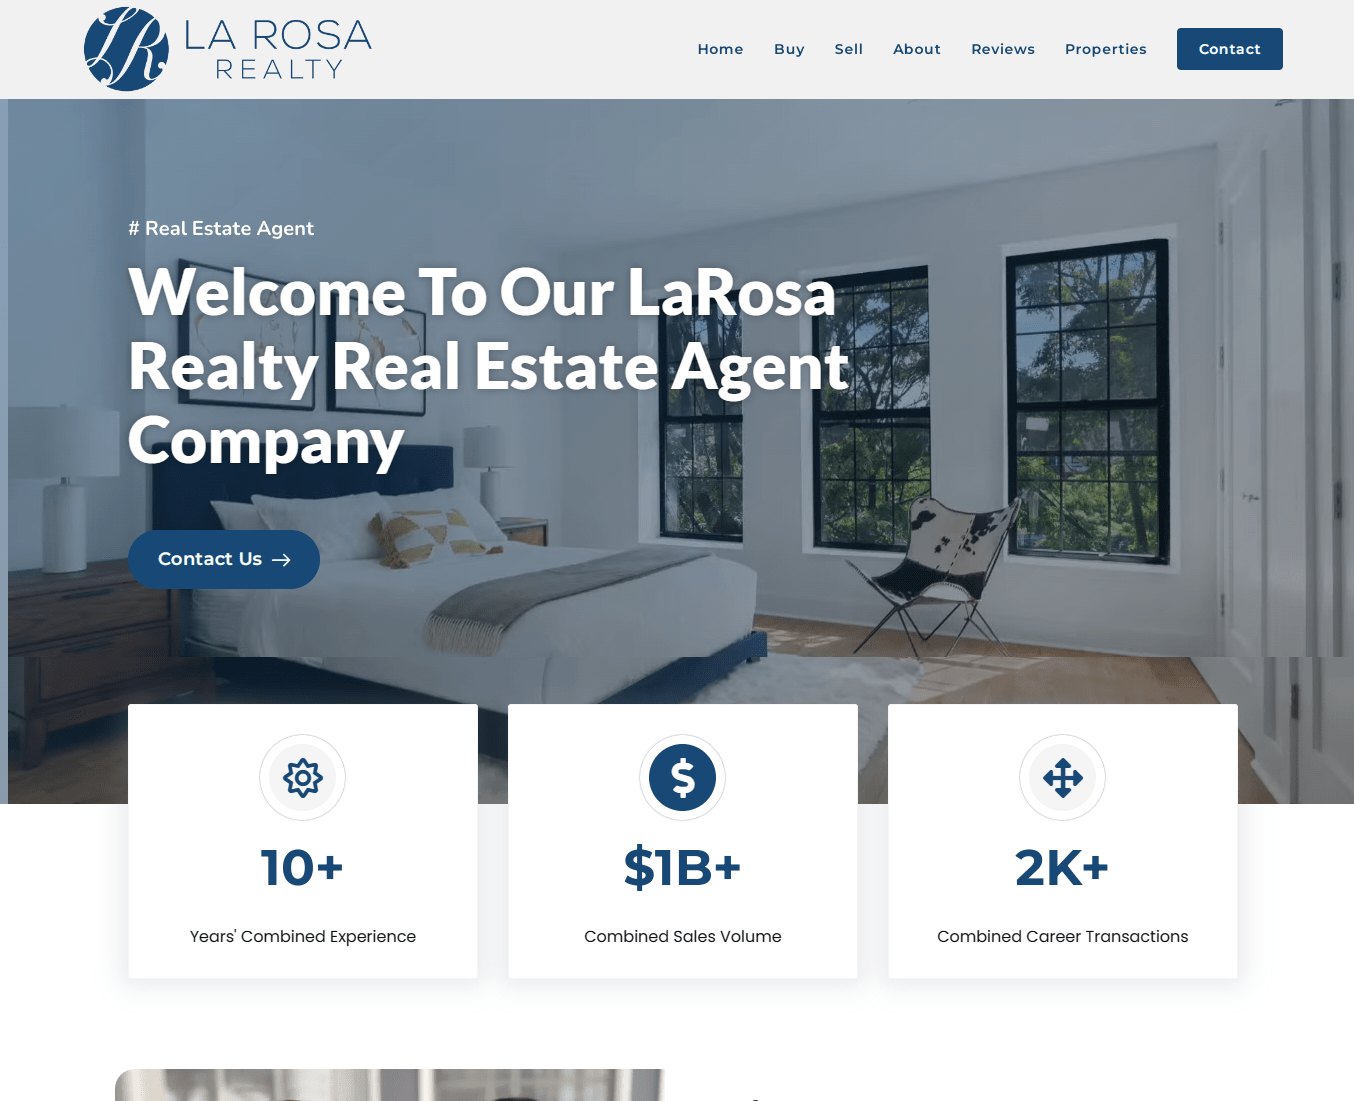 LaRosa Realty Real Estate Agent Company